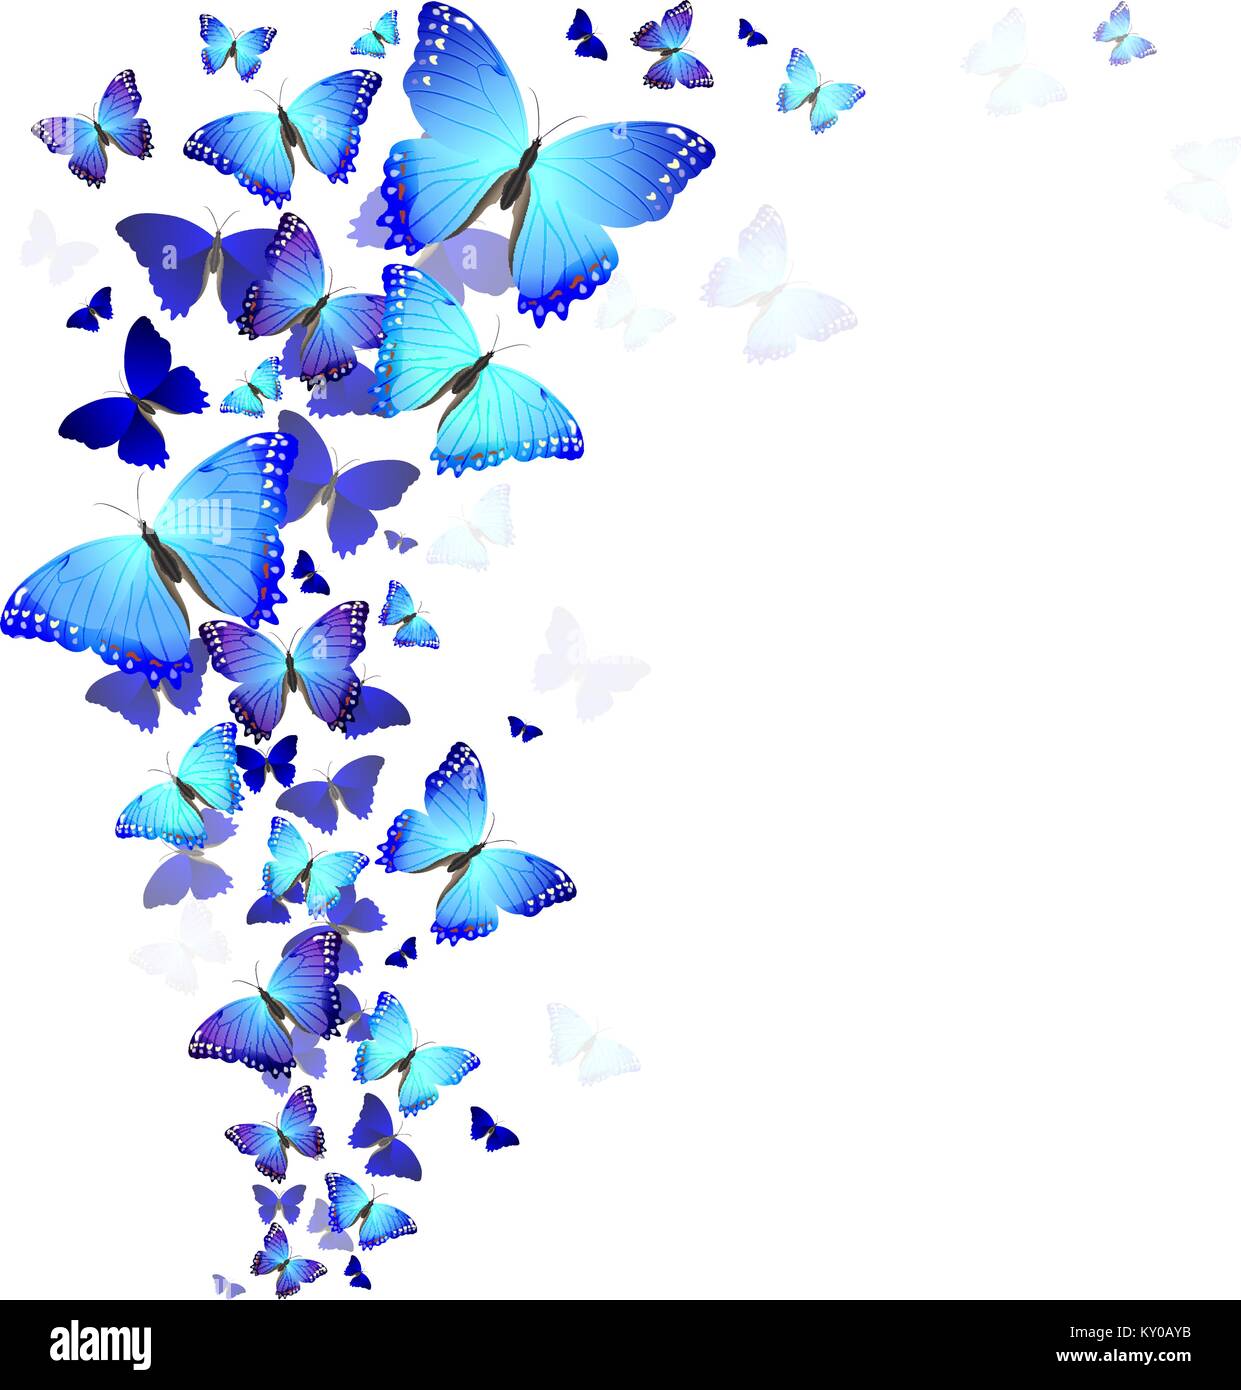 Với nền xanh nhẹ nhàng, những đôi cánh bướm mang đến cho bạn sự thành thục và đầy nghệ thuật. Hãy tham gia để tận hưởng một chút màu sắc trong cuộc sống, và để được thư giãn sau những giờ làm việc năng suất.